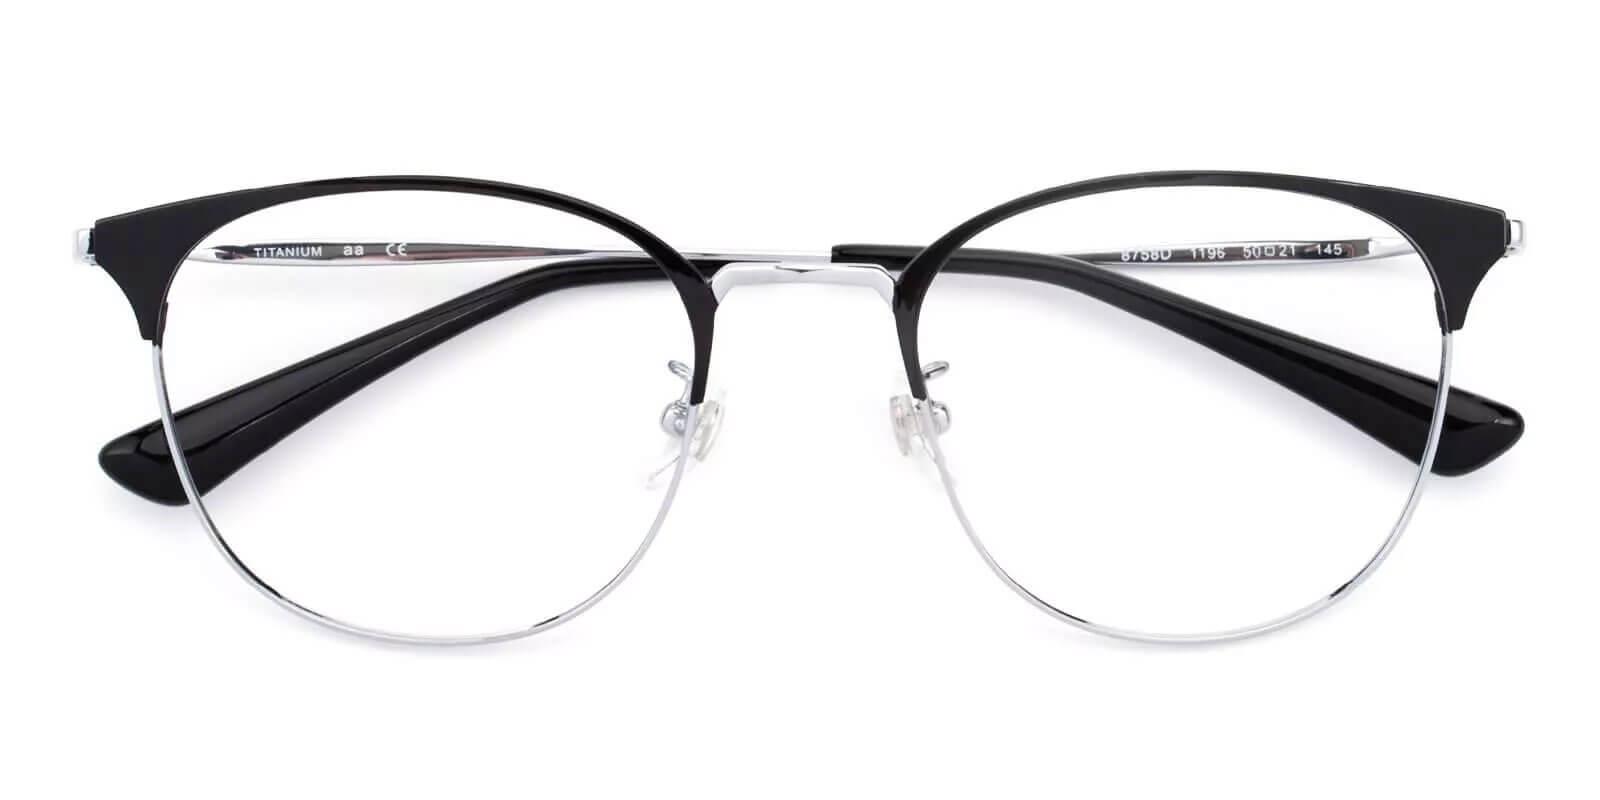 Delilah Silver Titanium Eyeglasses , Lightweight , NosePads Frames from ABBE Glasses